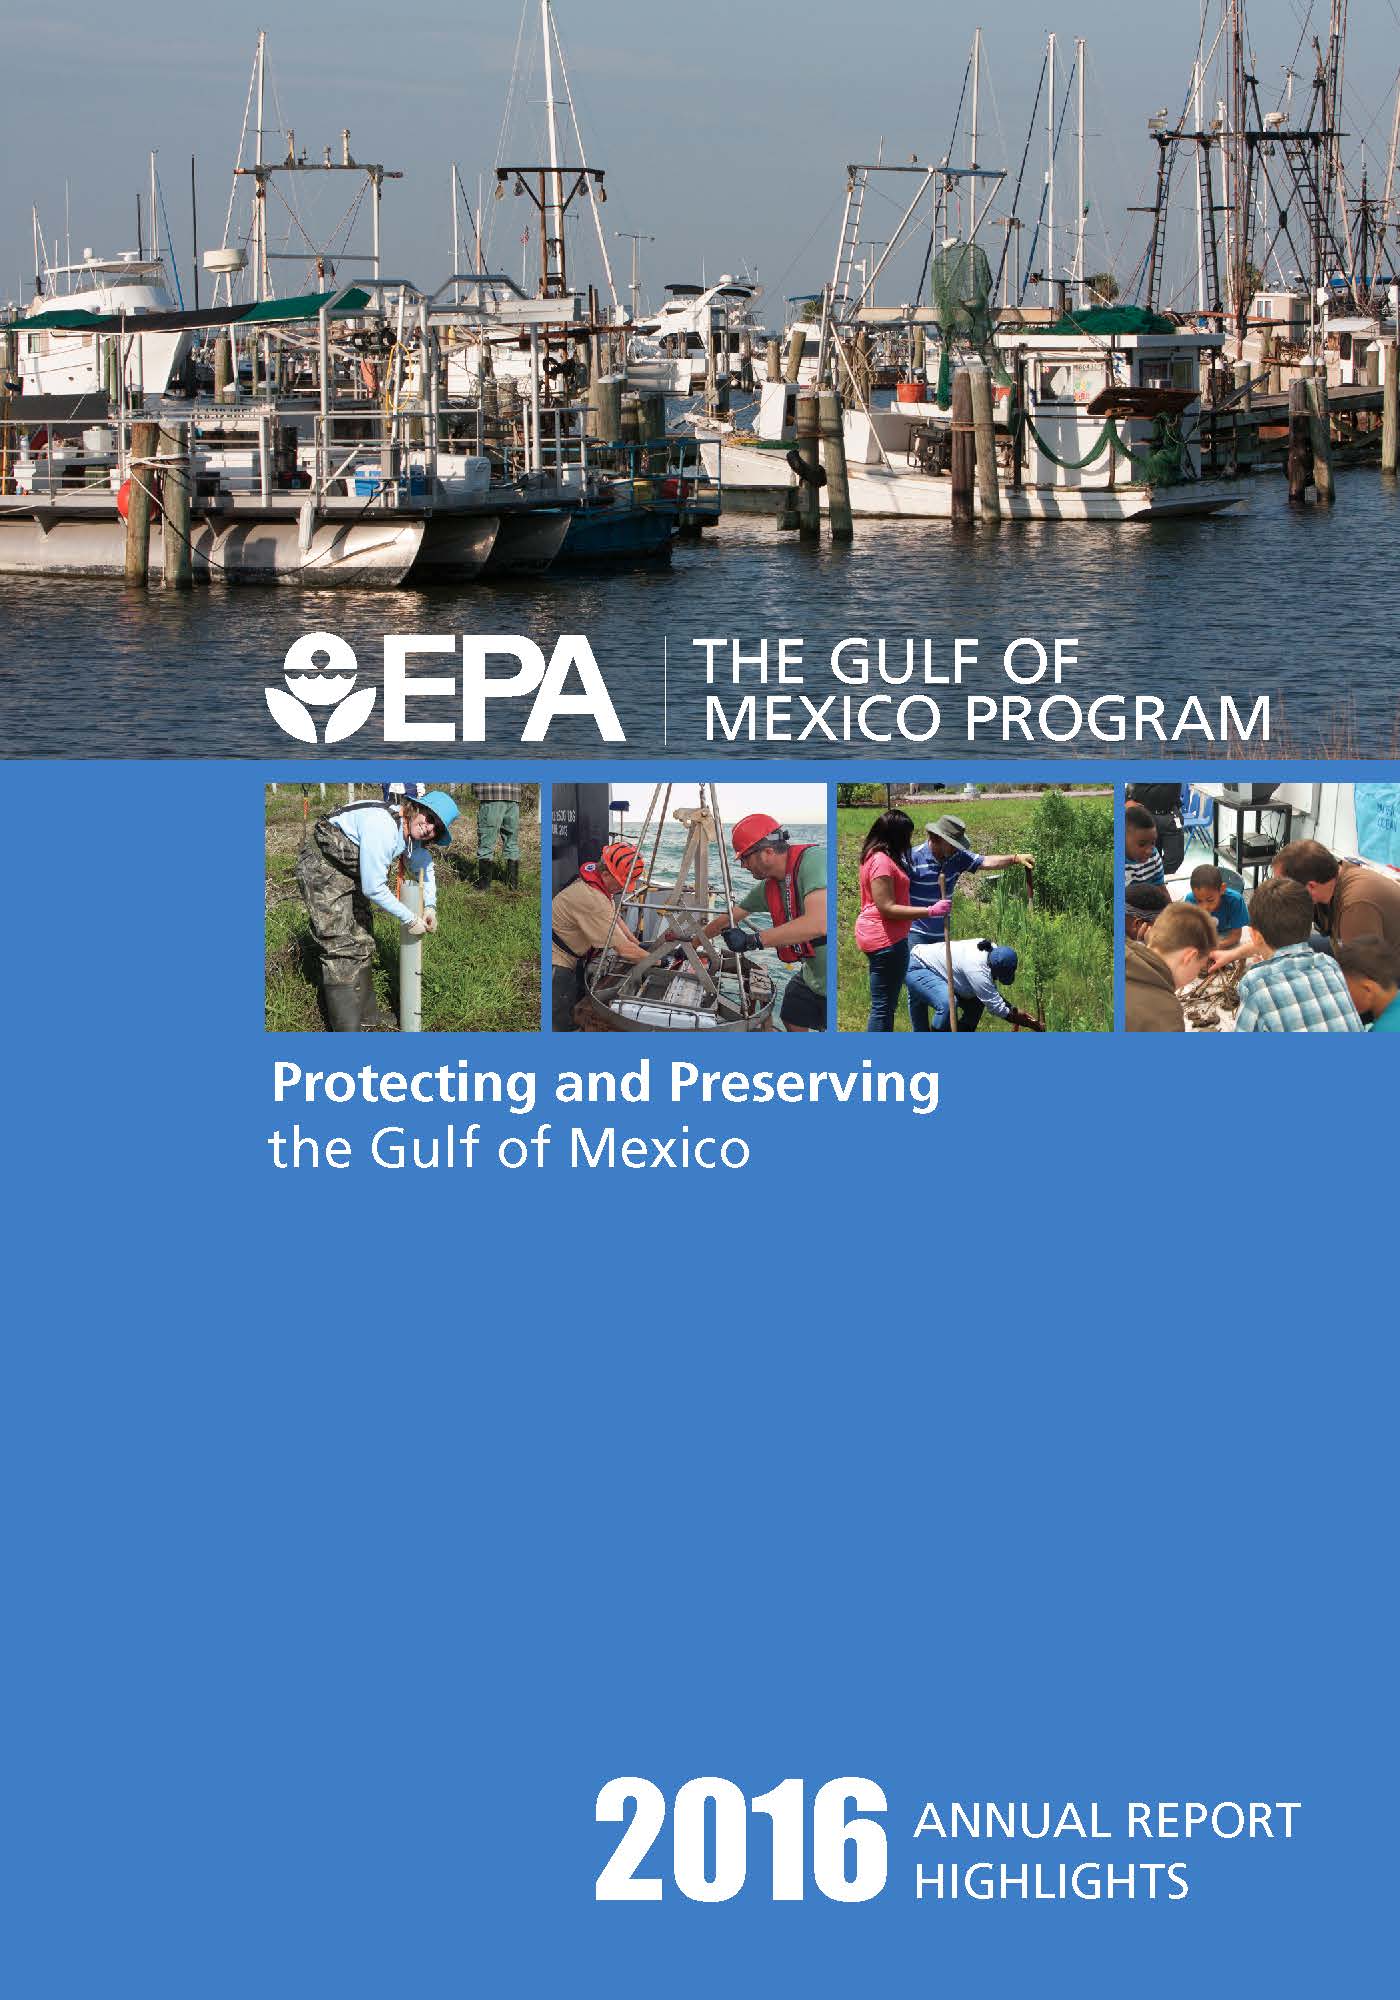  EPA Gulf of Mexico Program Annual Report 